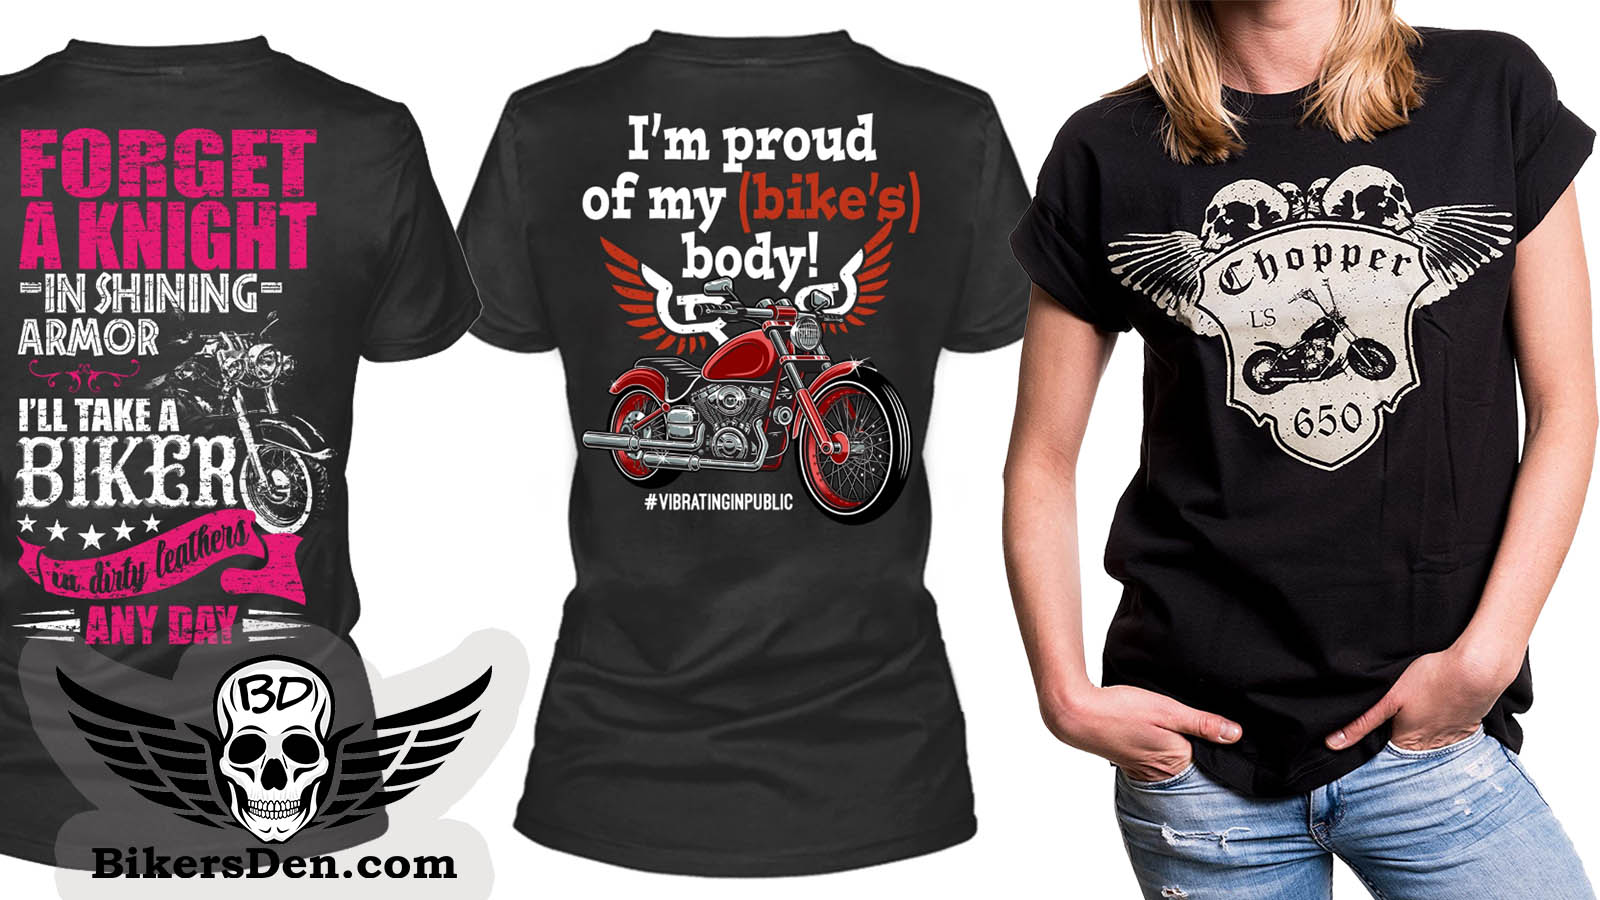 Women's Motorcycle & Biker T-Shirts - The Bikers' Den